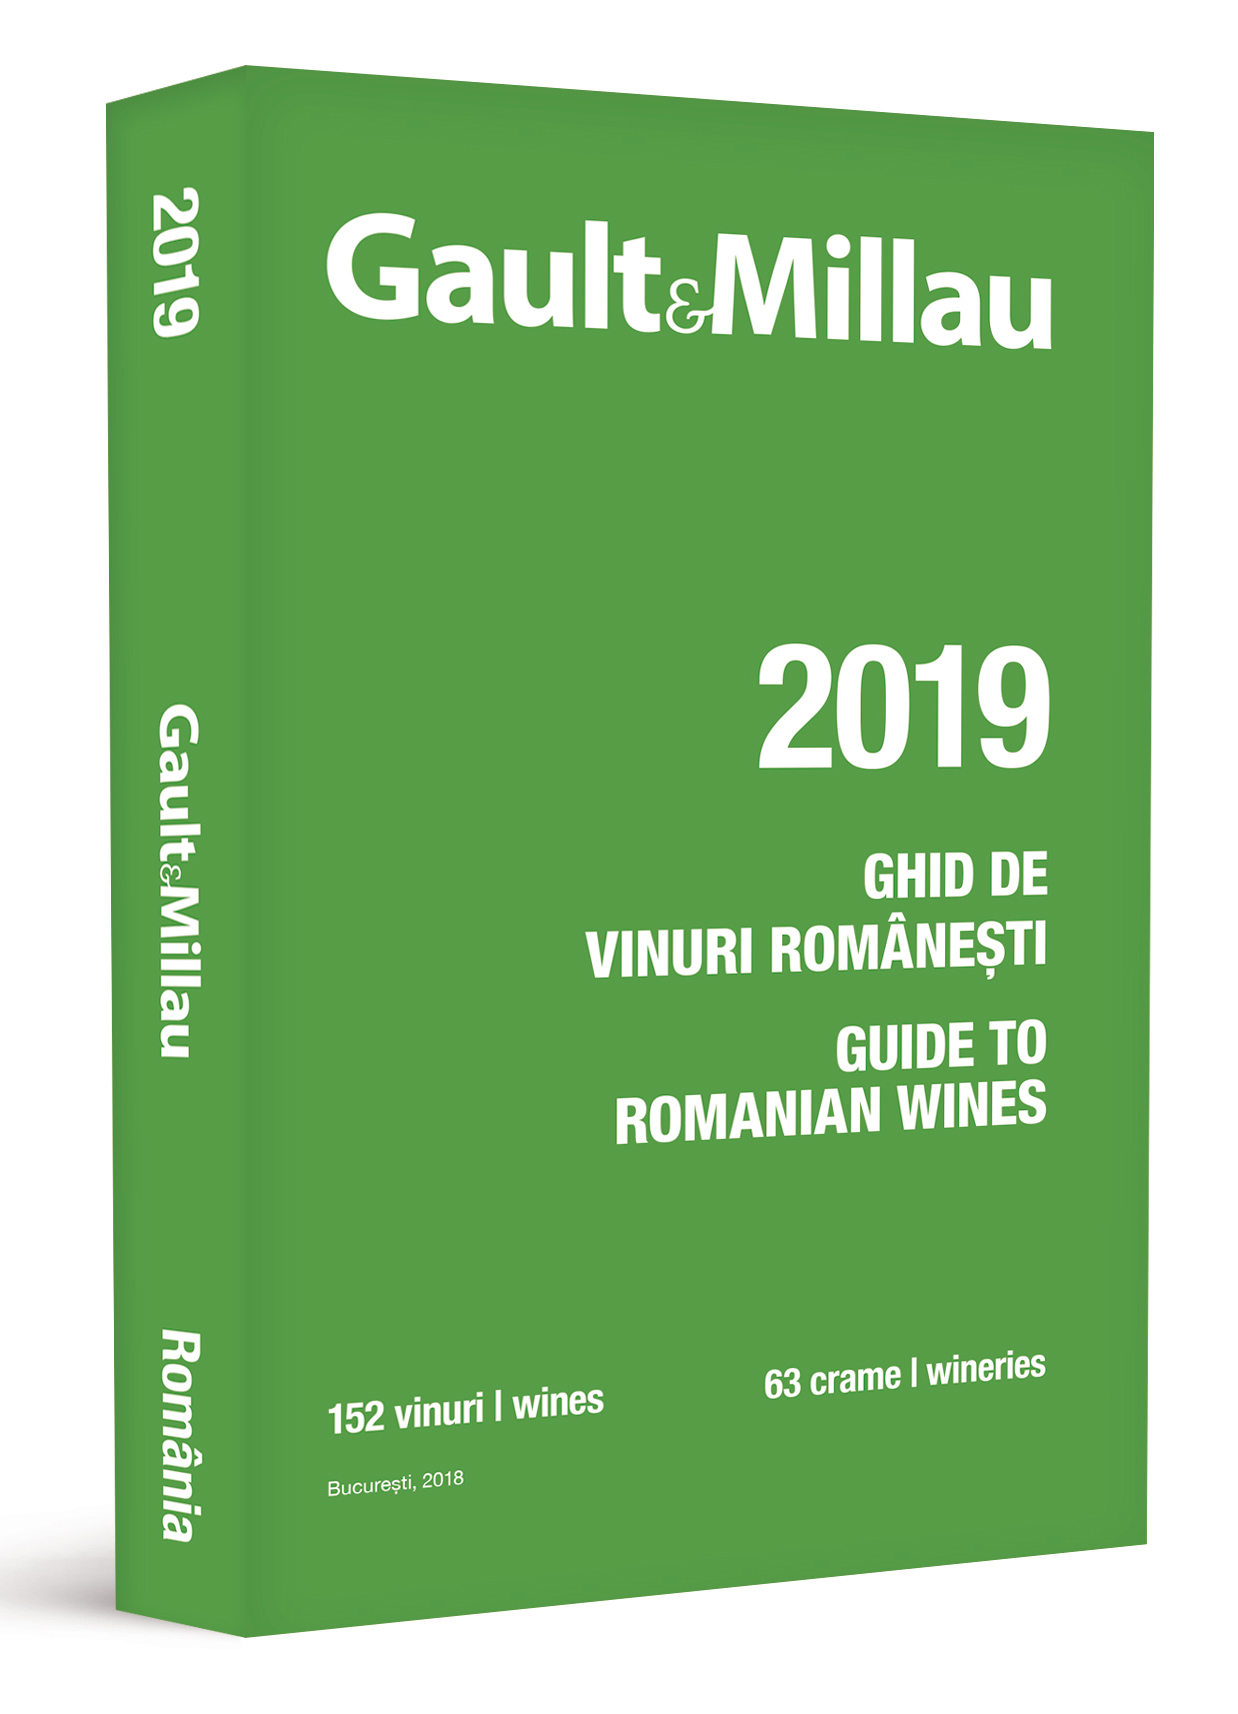 Ghidul Gault&Millau – Ghidul vinurilor romanesti 2019 | carturesti.ro poza noua